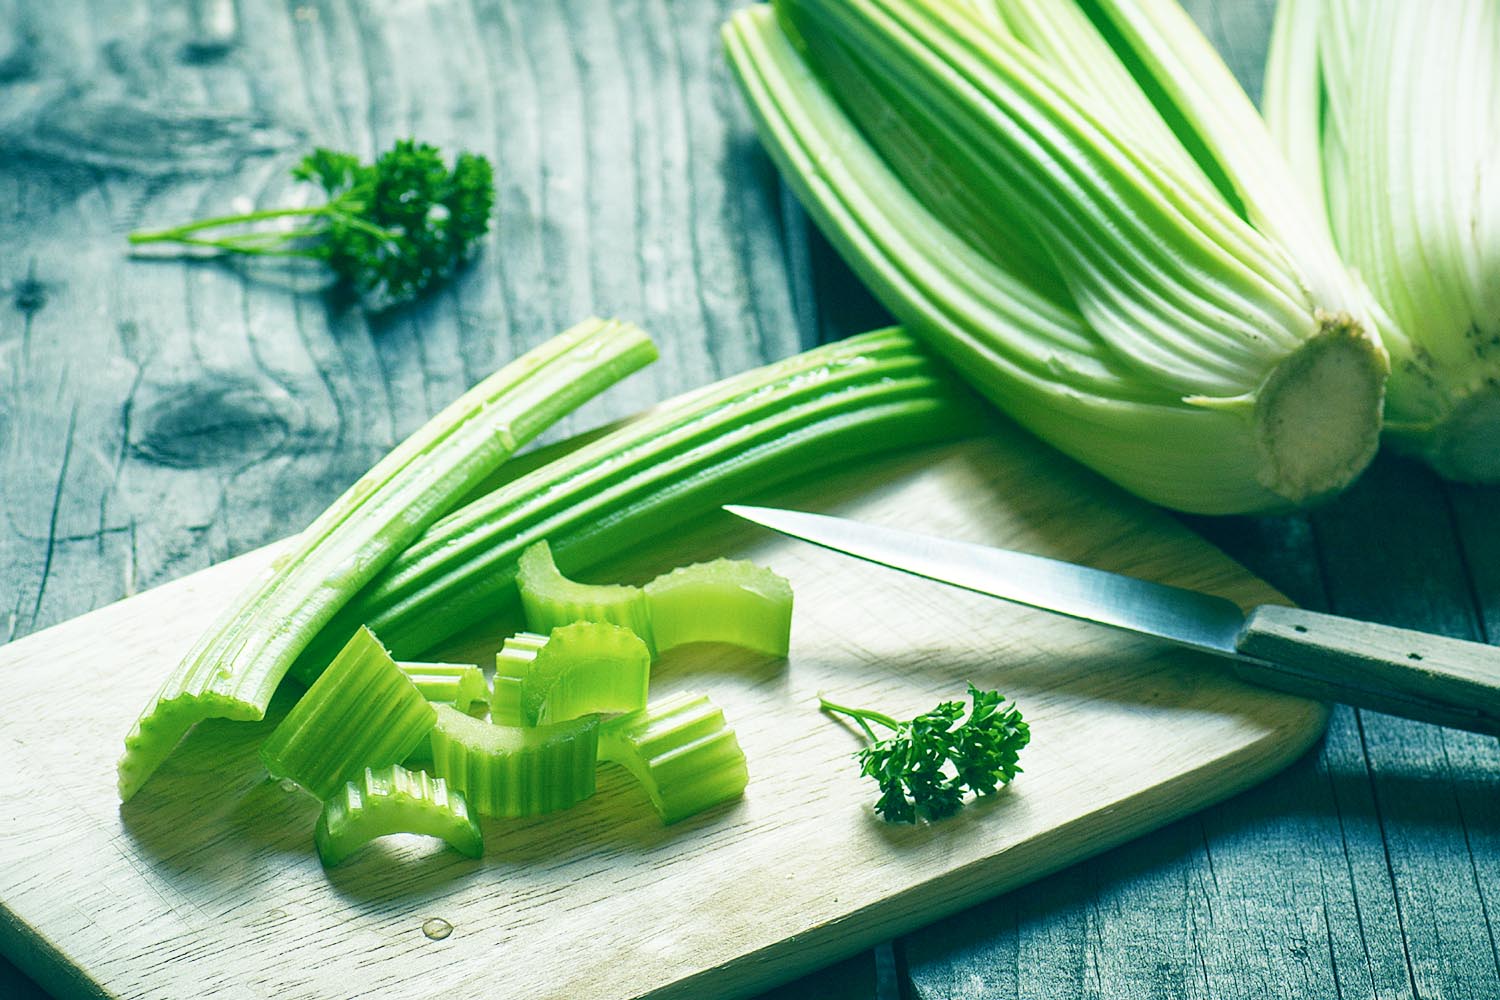 Celery e coli